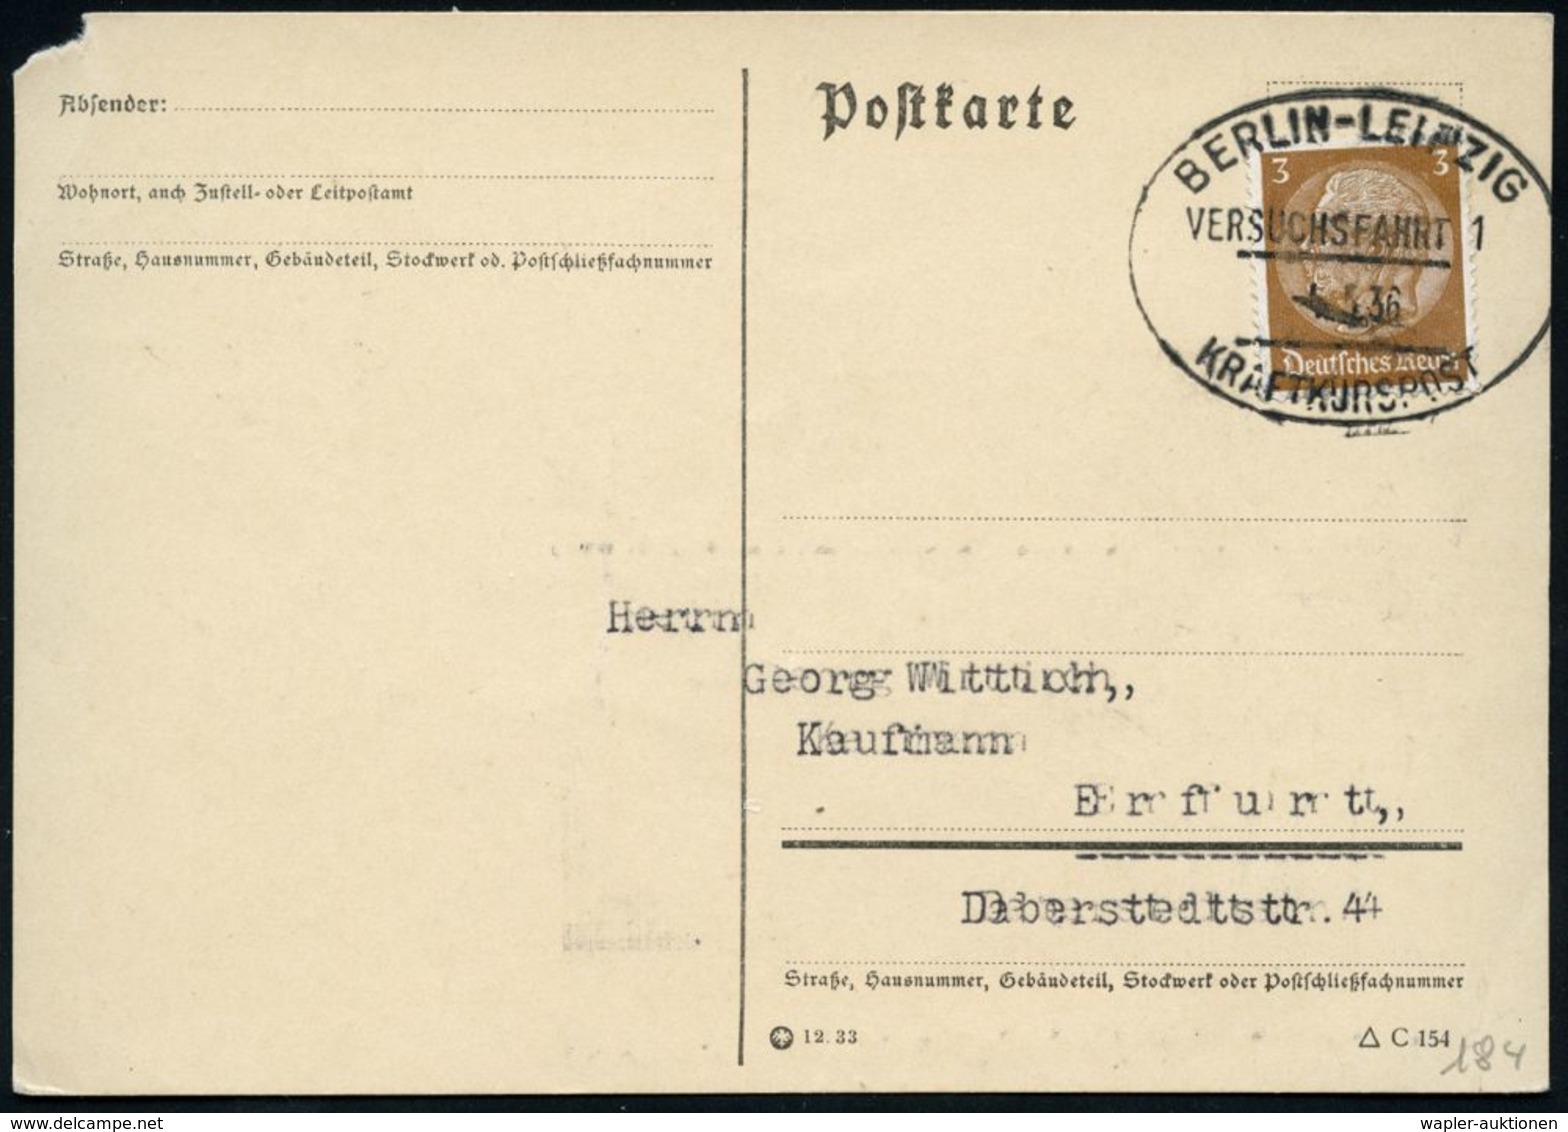 BERLIN-LEIPZIG/ VERSUCHSFAHRT 1/ KRAFTKURSPOST 1936 (5.5.) Seltener Oval-St Von Der Eröffnungsfahrt! , Inl.-Karte + Kopi - Cars